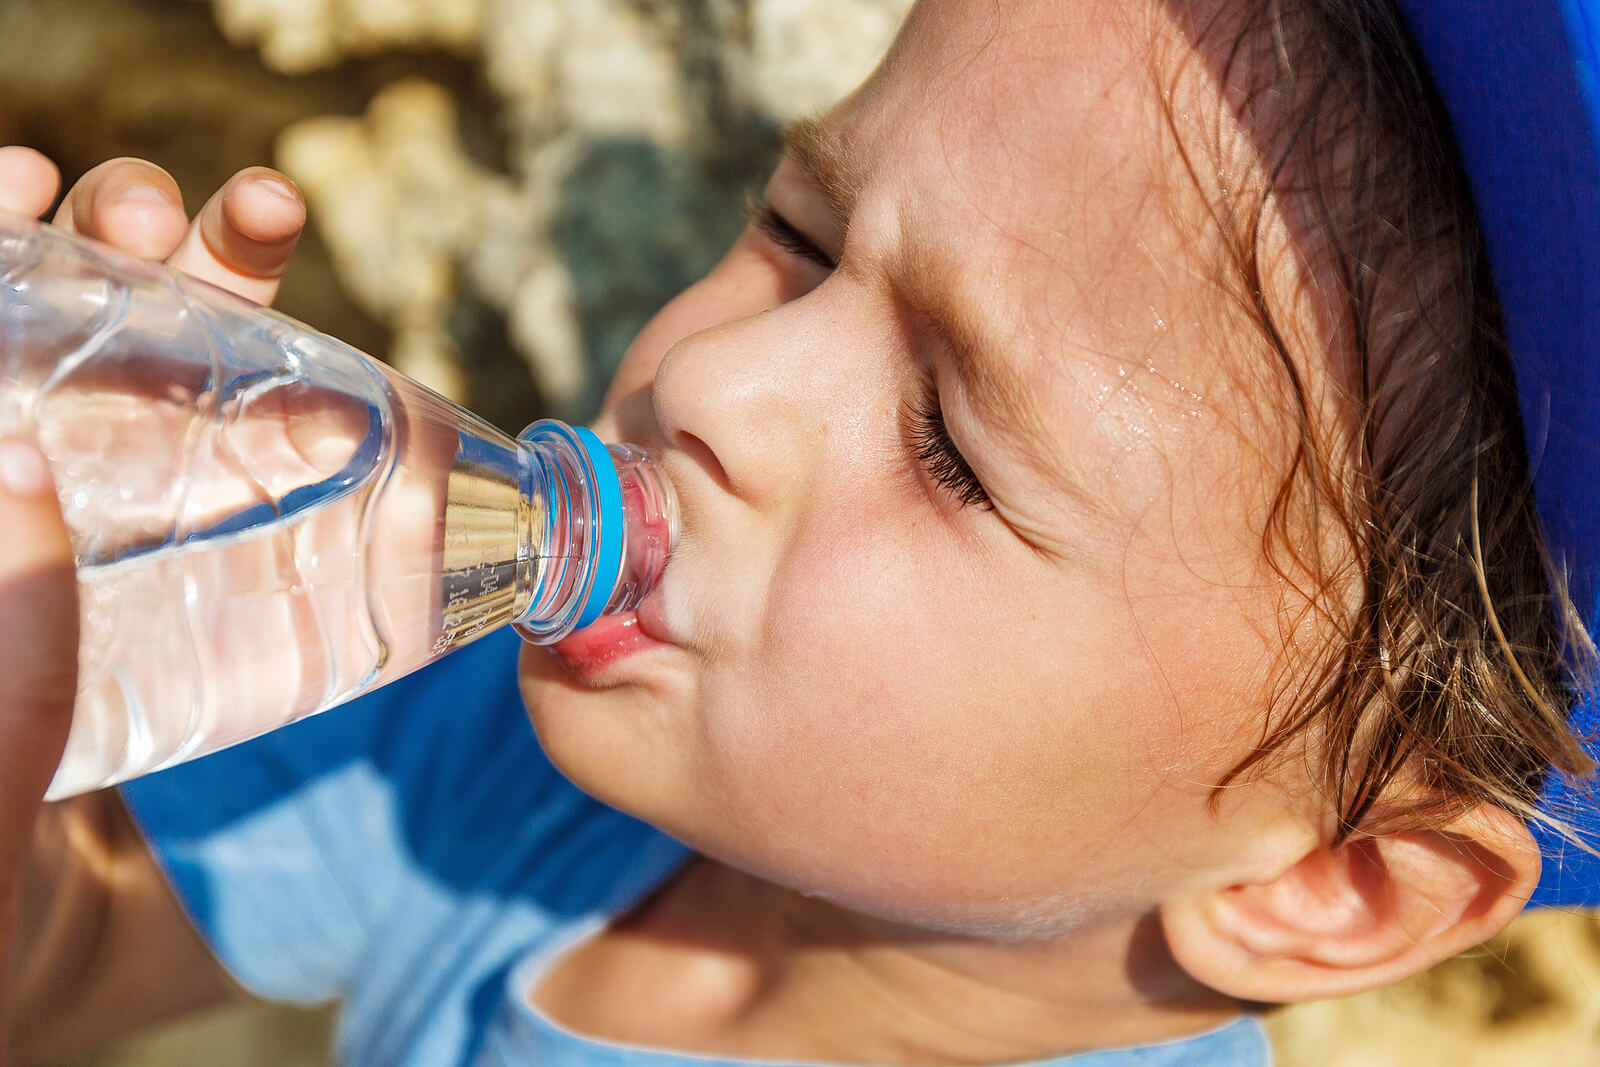 Water drinken is ook goed voor de mondgezondheid